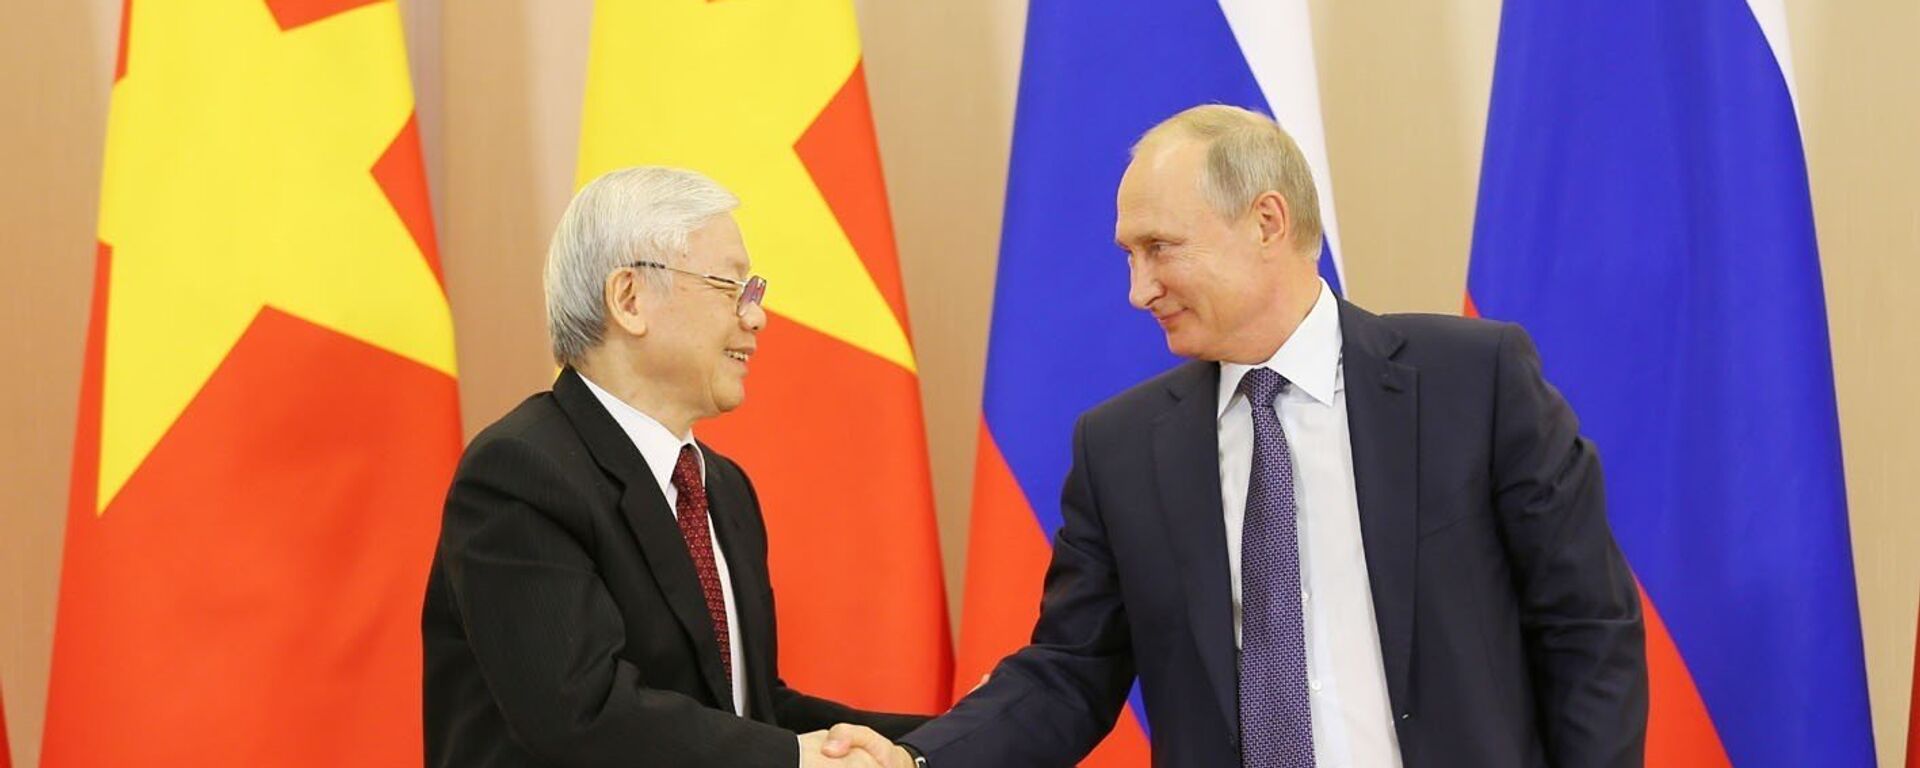 Tổng Bí thư Nguyễn Phú Trọng và Tổng thống Vladimir Putin chứng kiến Lễ ký kết các văn kiện hợp tác giữa Việt Nam và Liên bang Nga - Sputnik Việt Nam, 1920, 05.02.2021